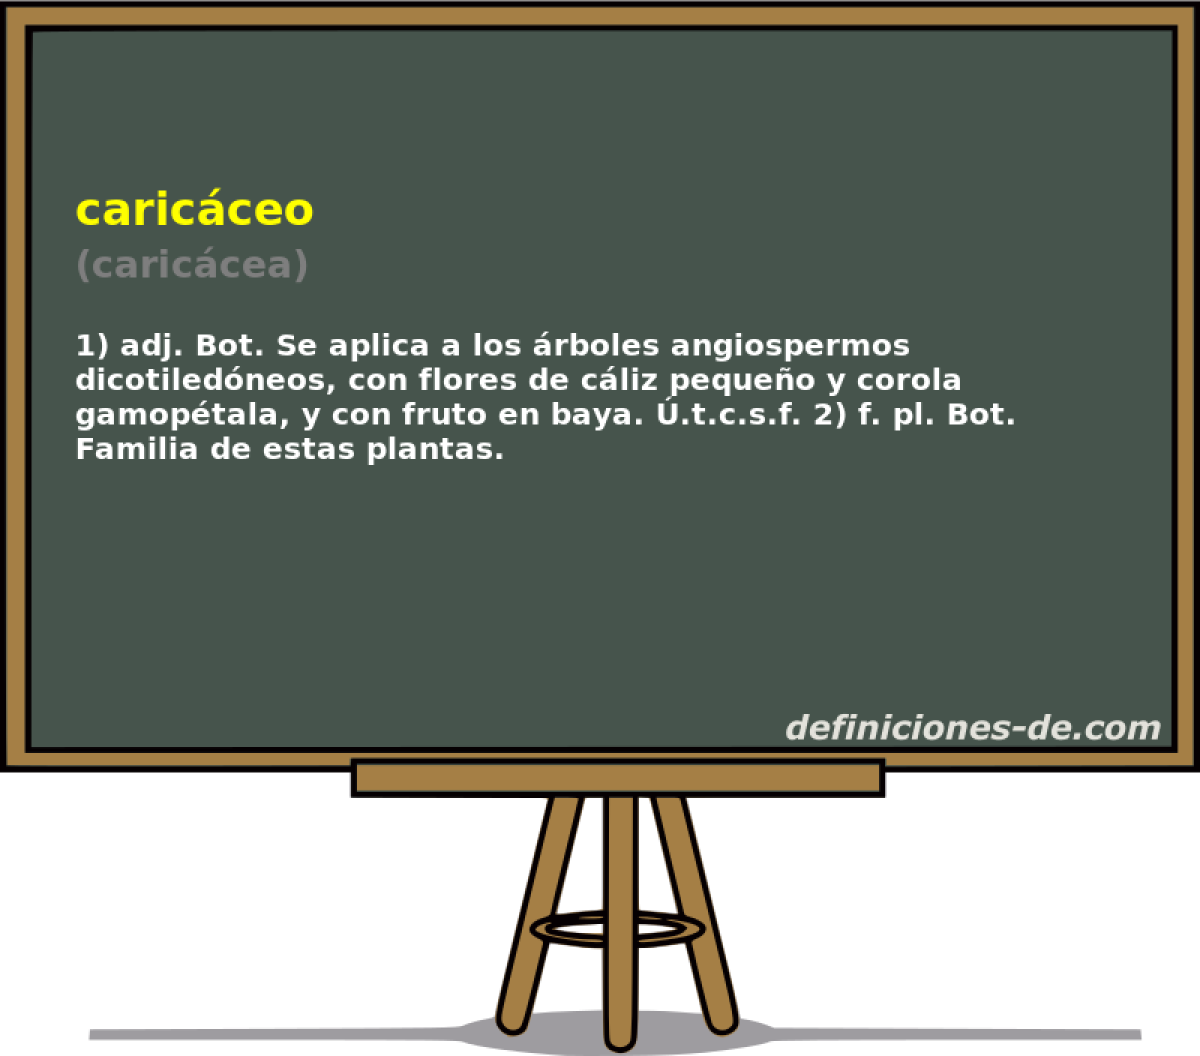 caricceo (cariccea)